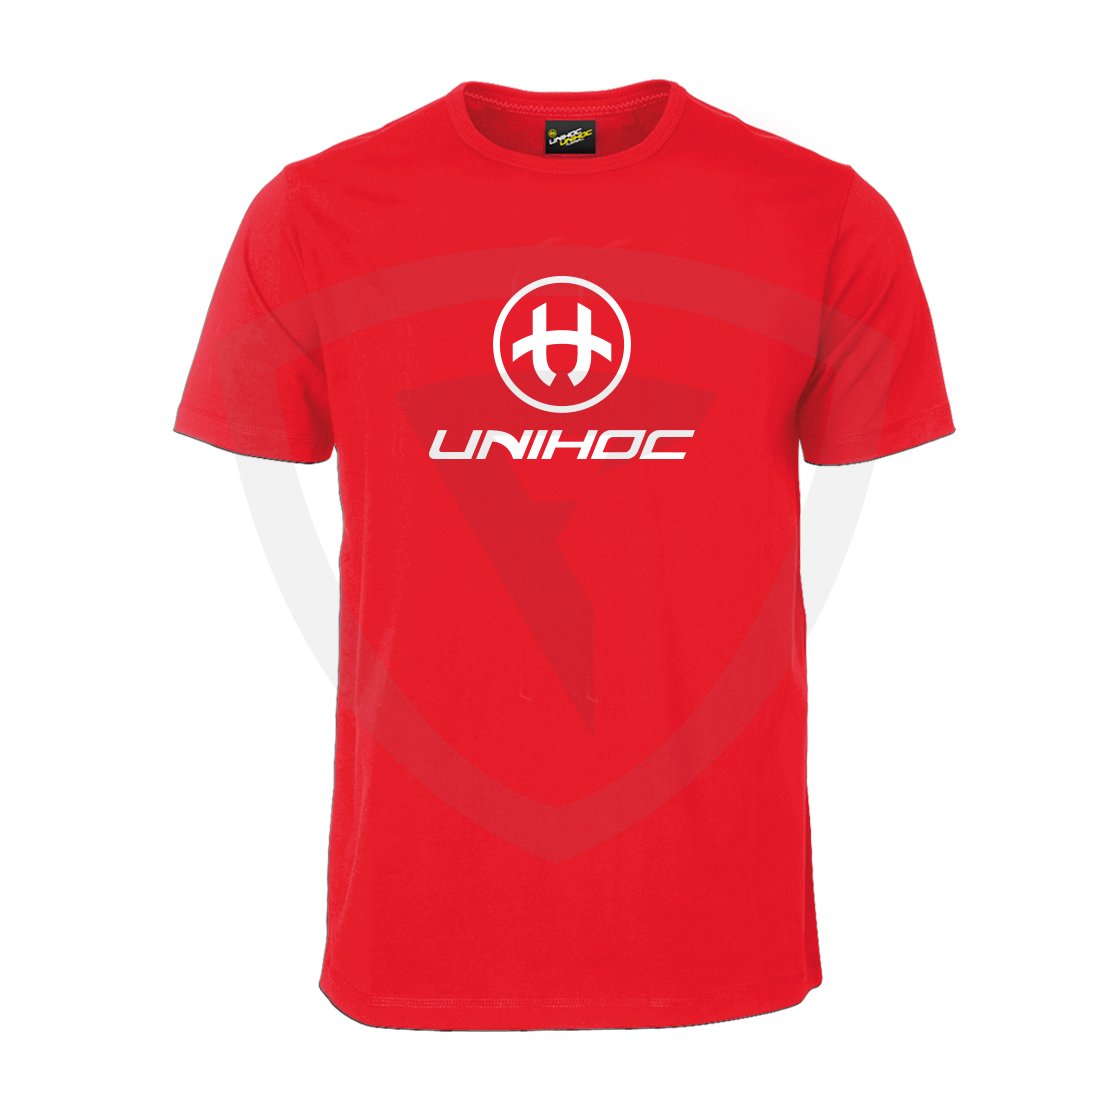 Unihoc T-shirt Storm Red SR. XS červená